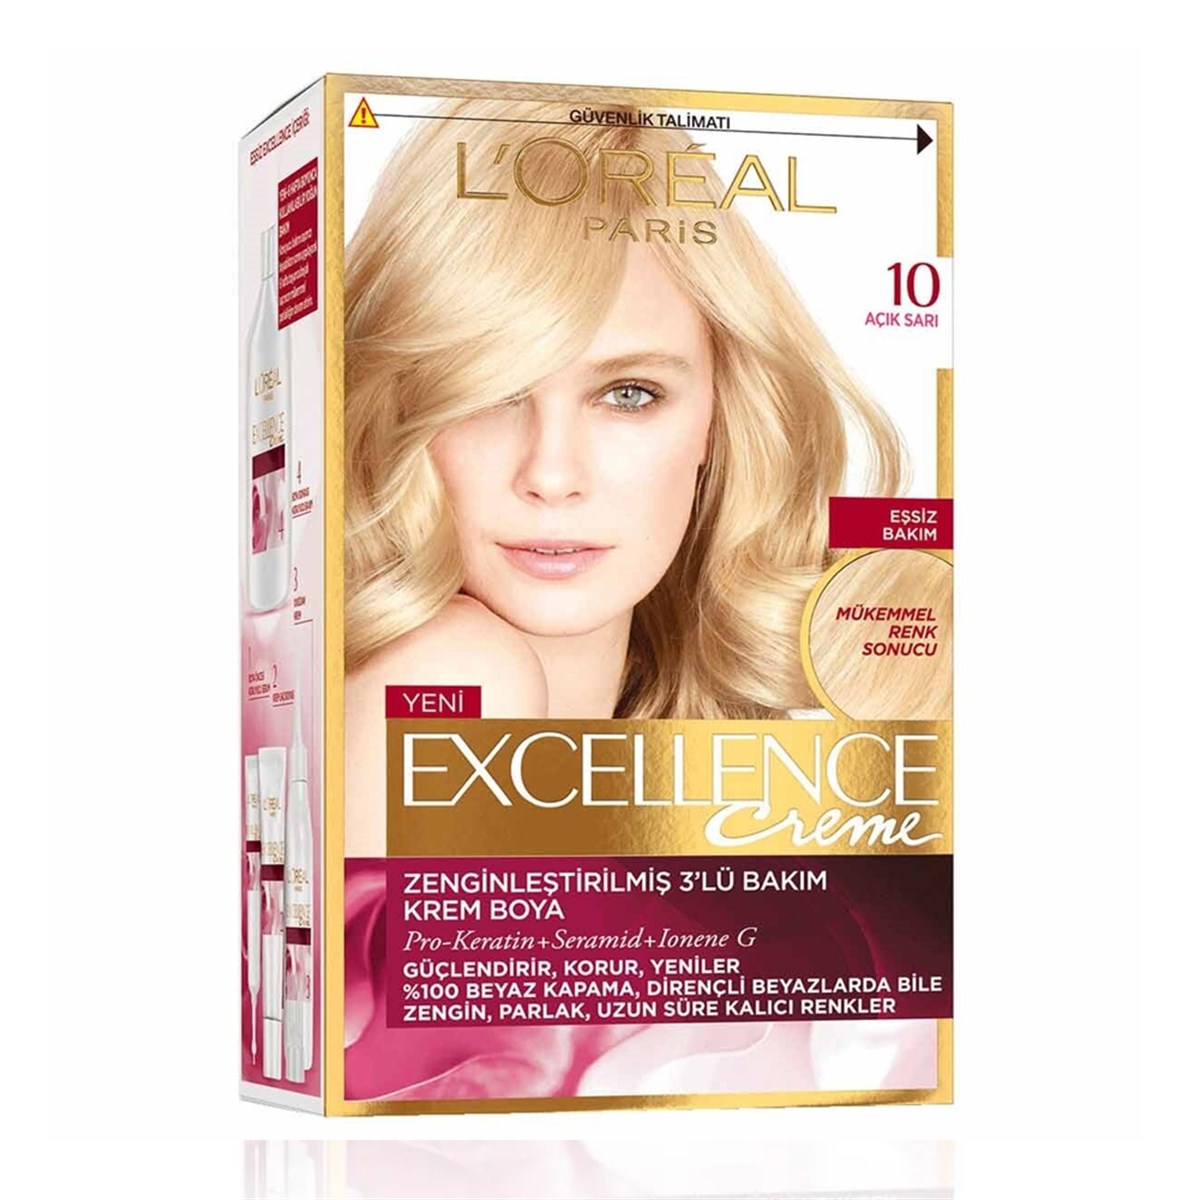 Loreal Paris Excellence Creme Saç Boyası 10 Açık Sarı - Platin